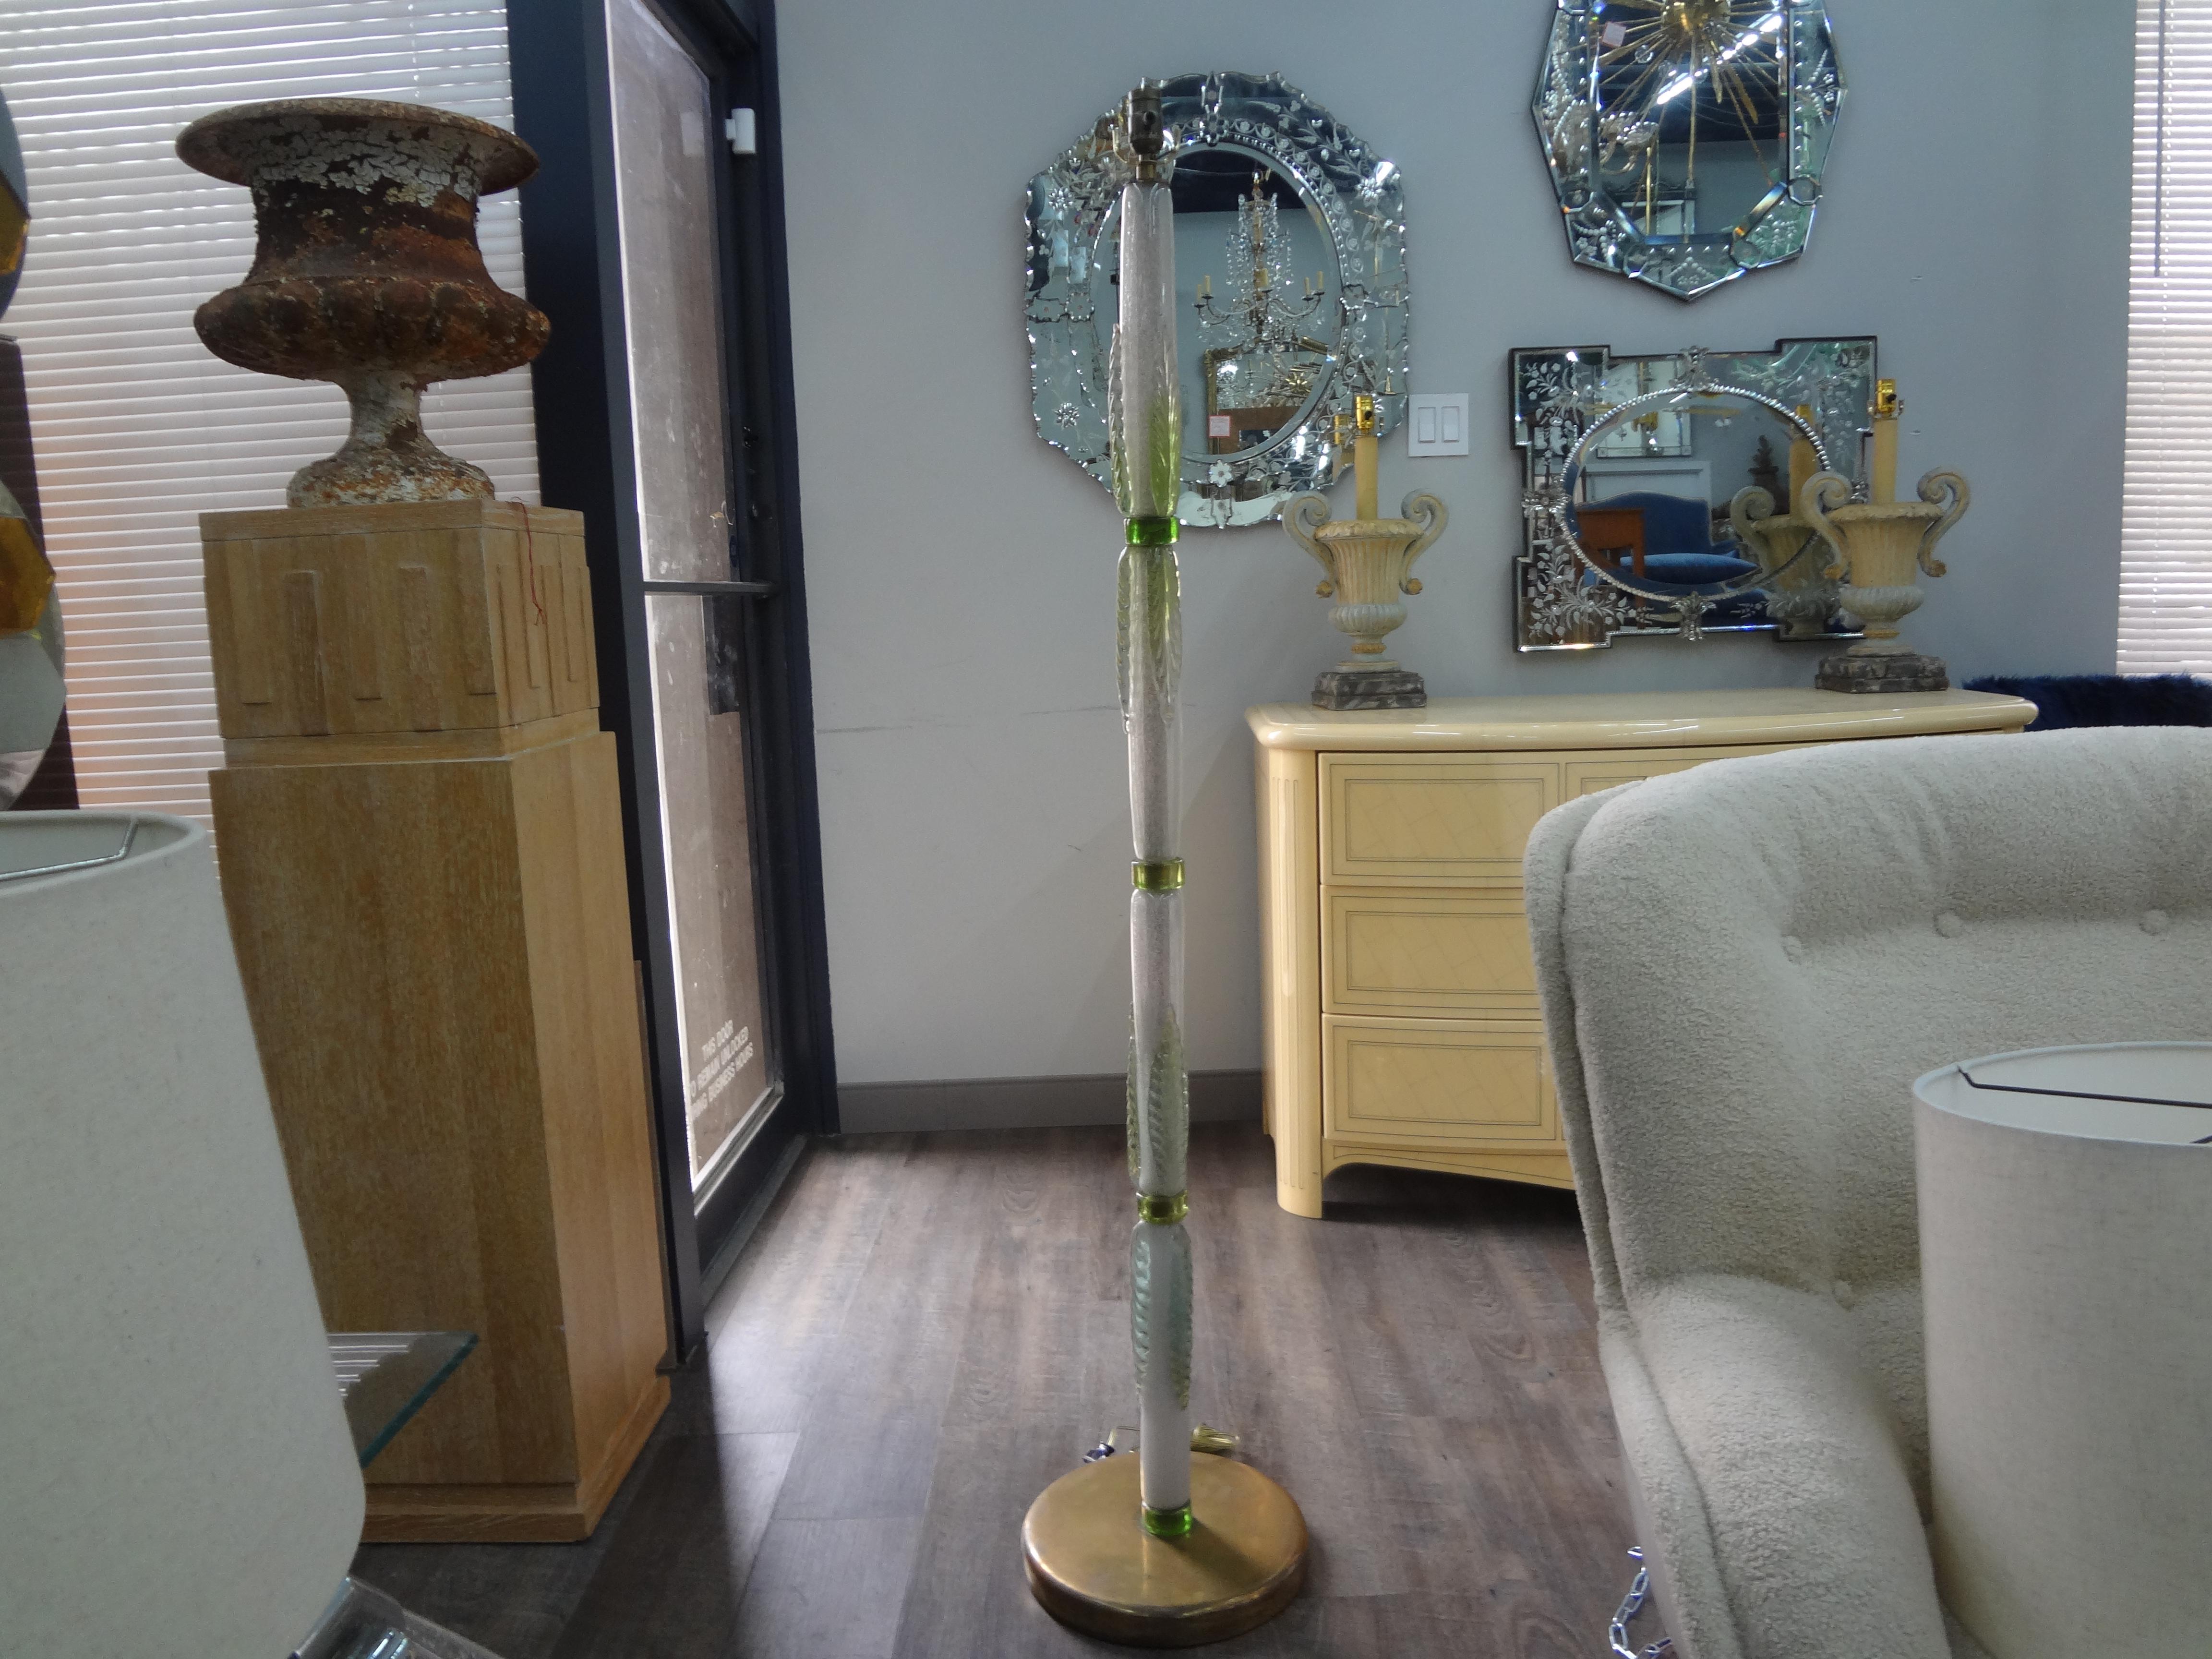 Mid Century Murano Glas Stehlampe.
Hübsche Stehlampe aus der Mitte des Jahrhunderts aus mundgeblasenem Murano-Glas in Grün- und Weißtönen, montiert auf einem Messingfuß. Diese ungewöhnliche Stehleuchte wurde für den amerikanischen Markt neu